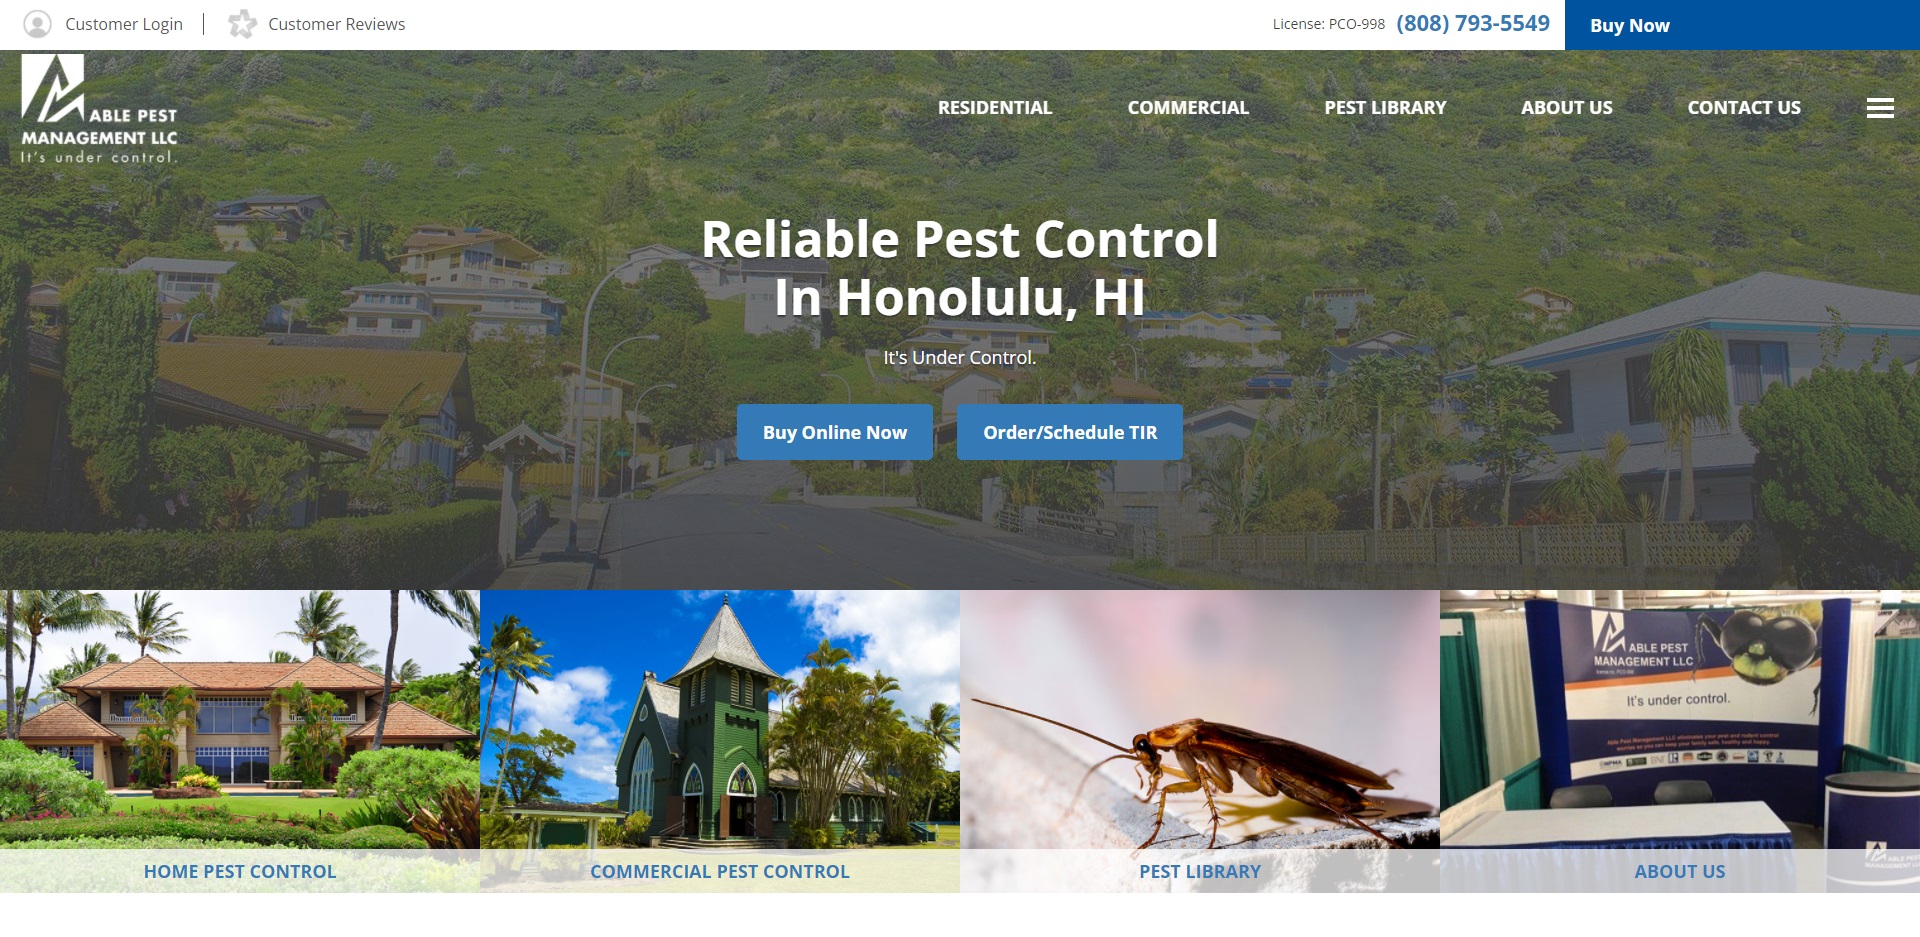 5 Best Pest Control Companies in Honolulu, HI